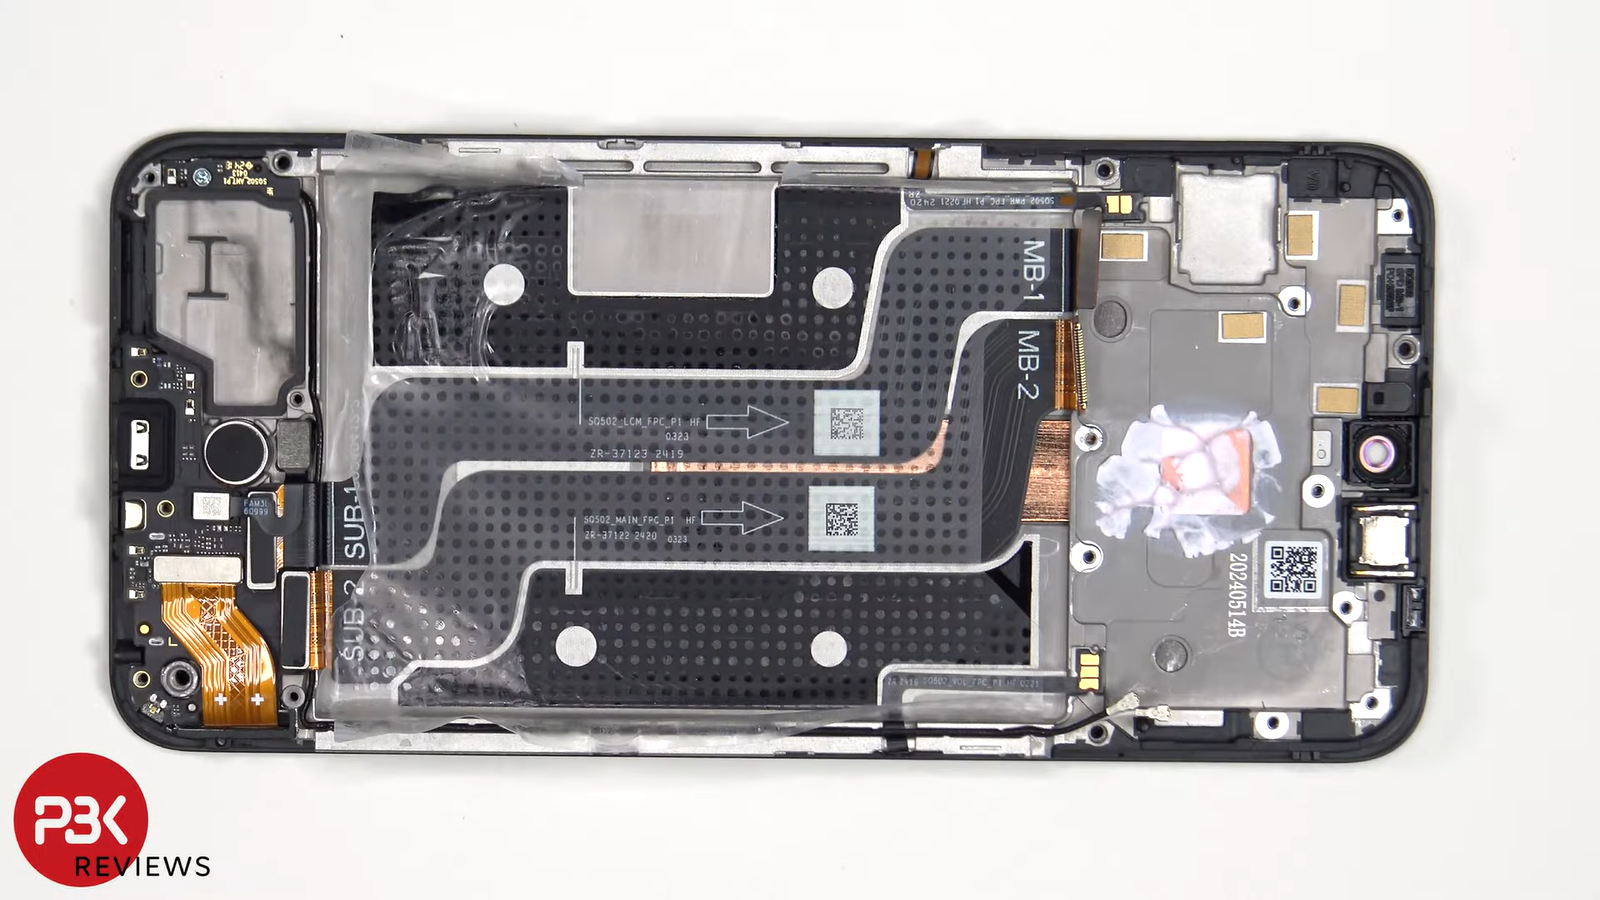 Смартфон от создателей OnePlus — CMF Phone 1 со съёмной крышкой — получил 6.5 баллов из 10 за ремонтопригодность1